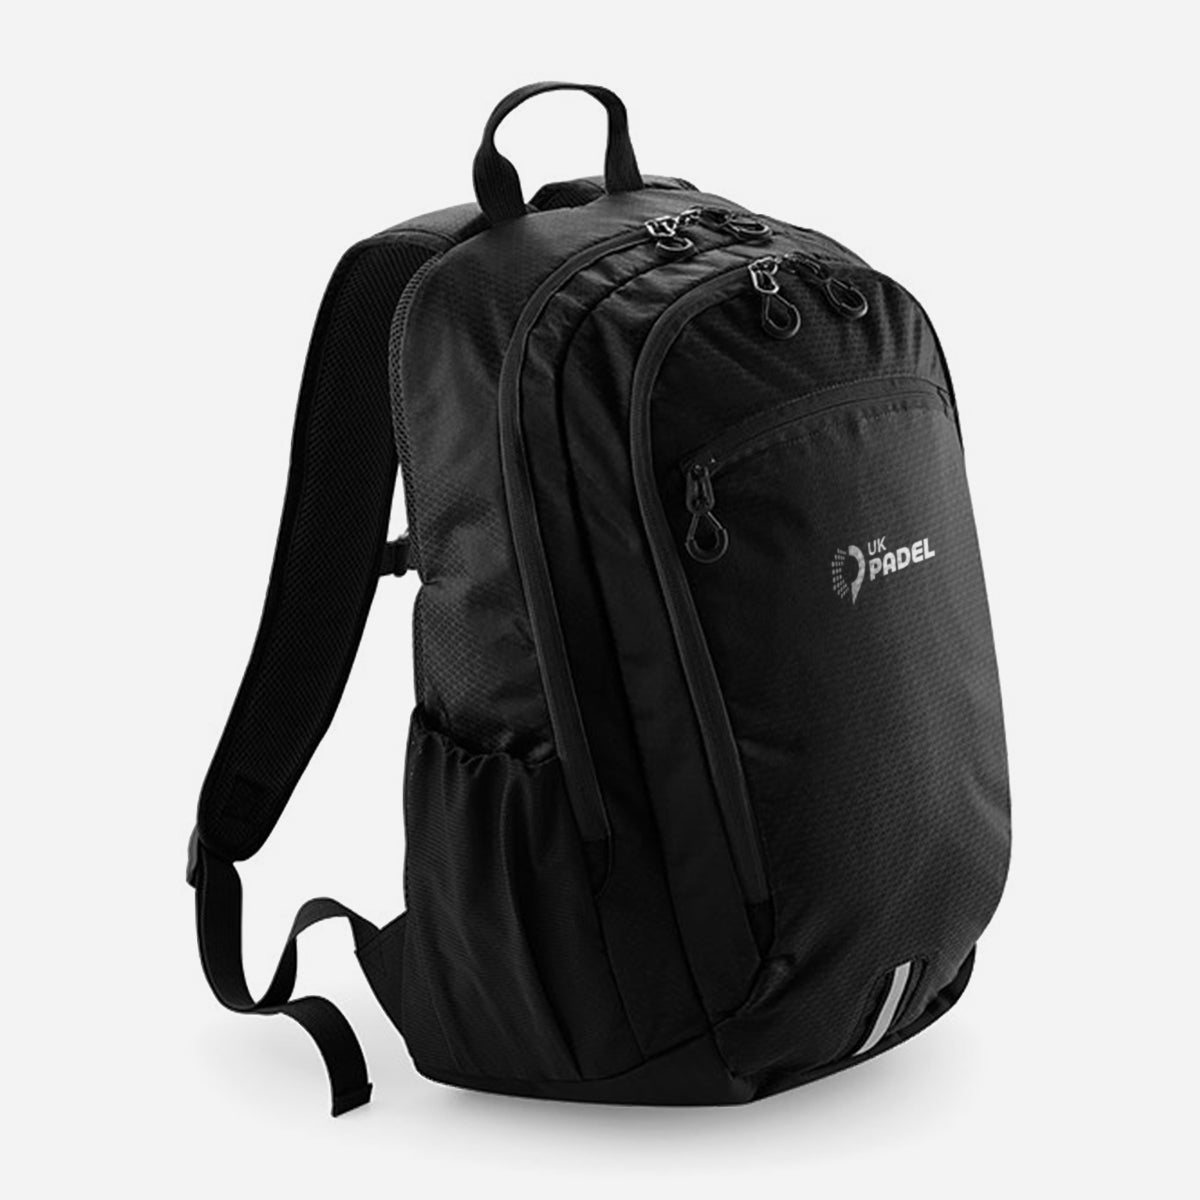 UK Padel Endeavour backpack